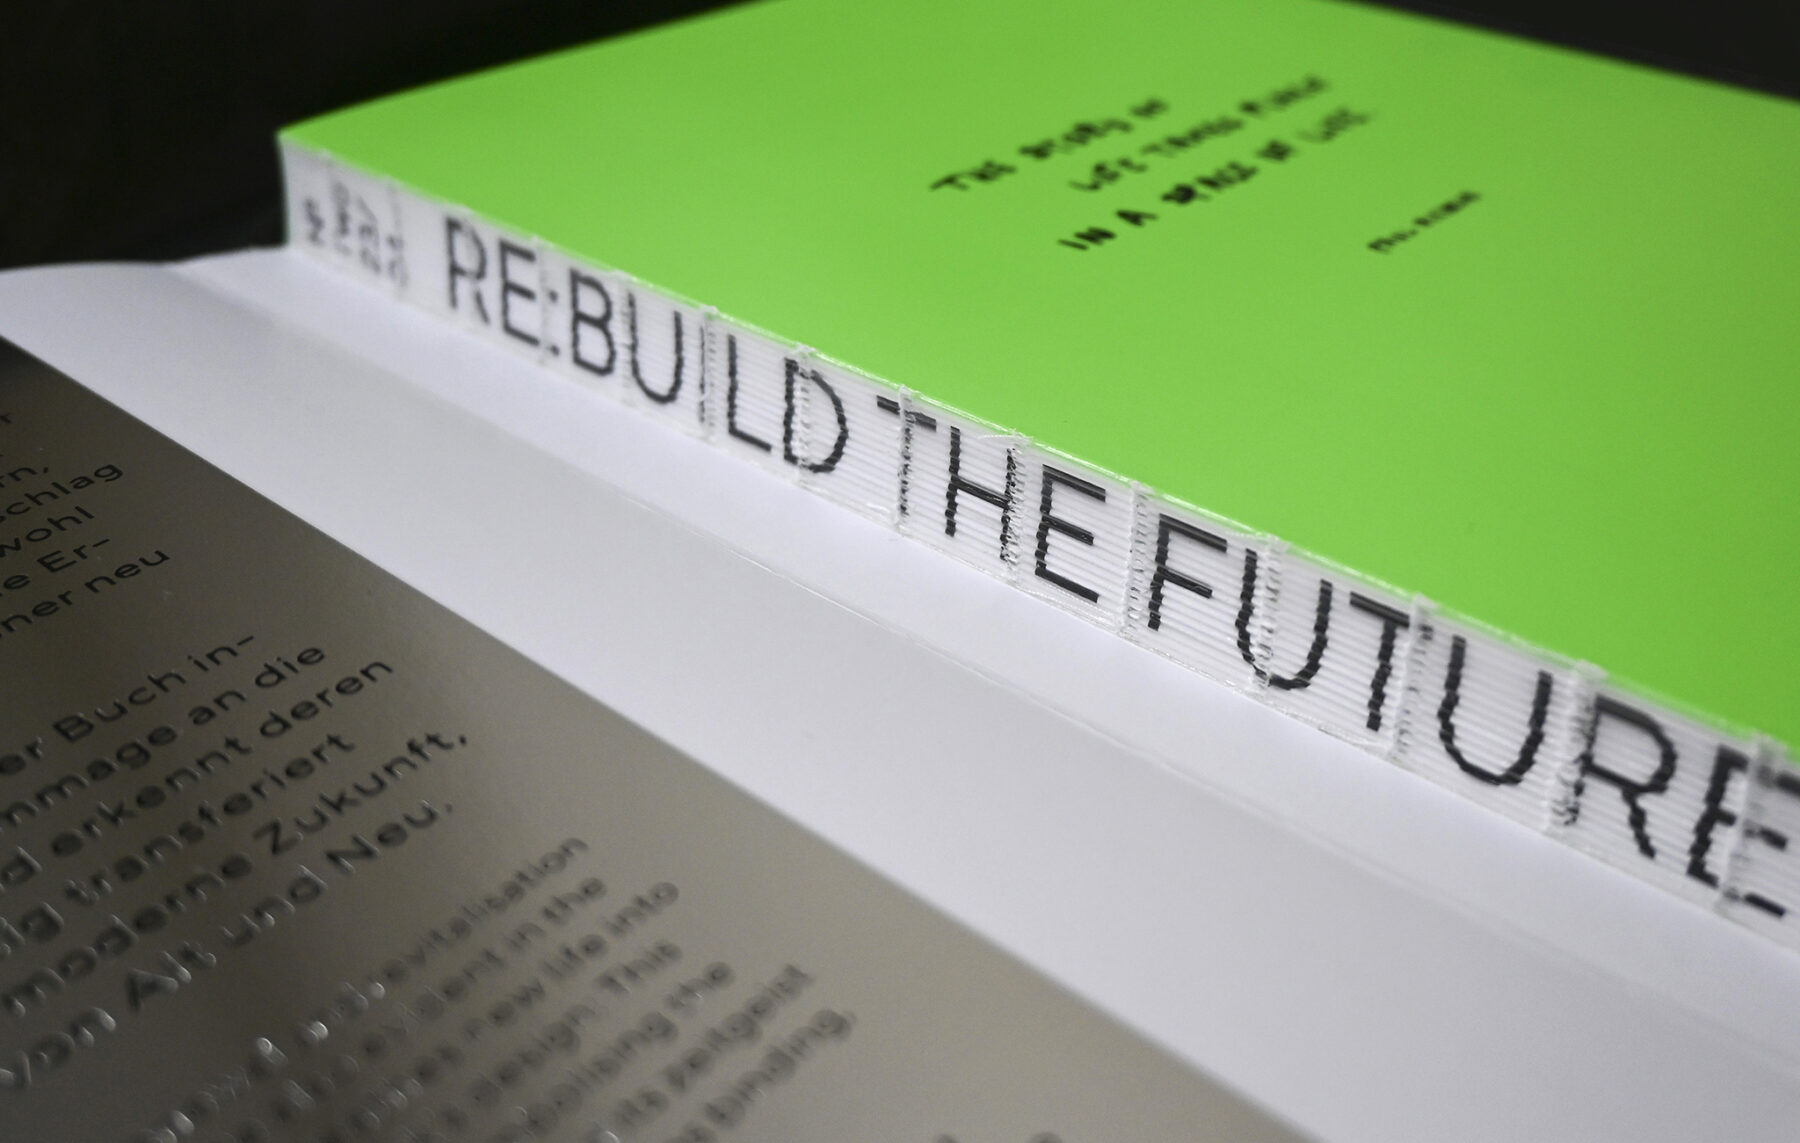 Re:build the future – Bookazine °2 (2)